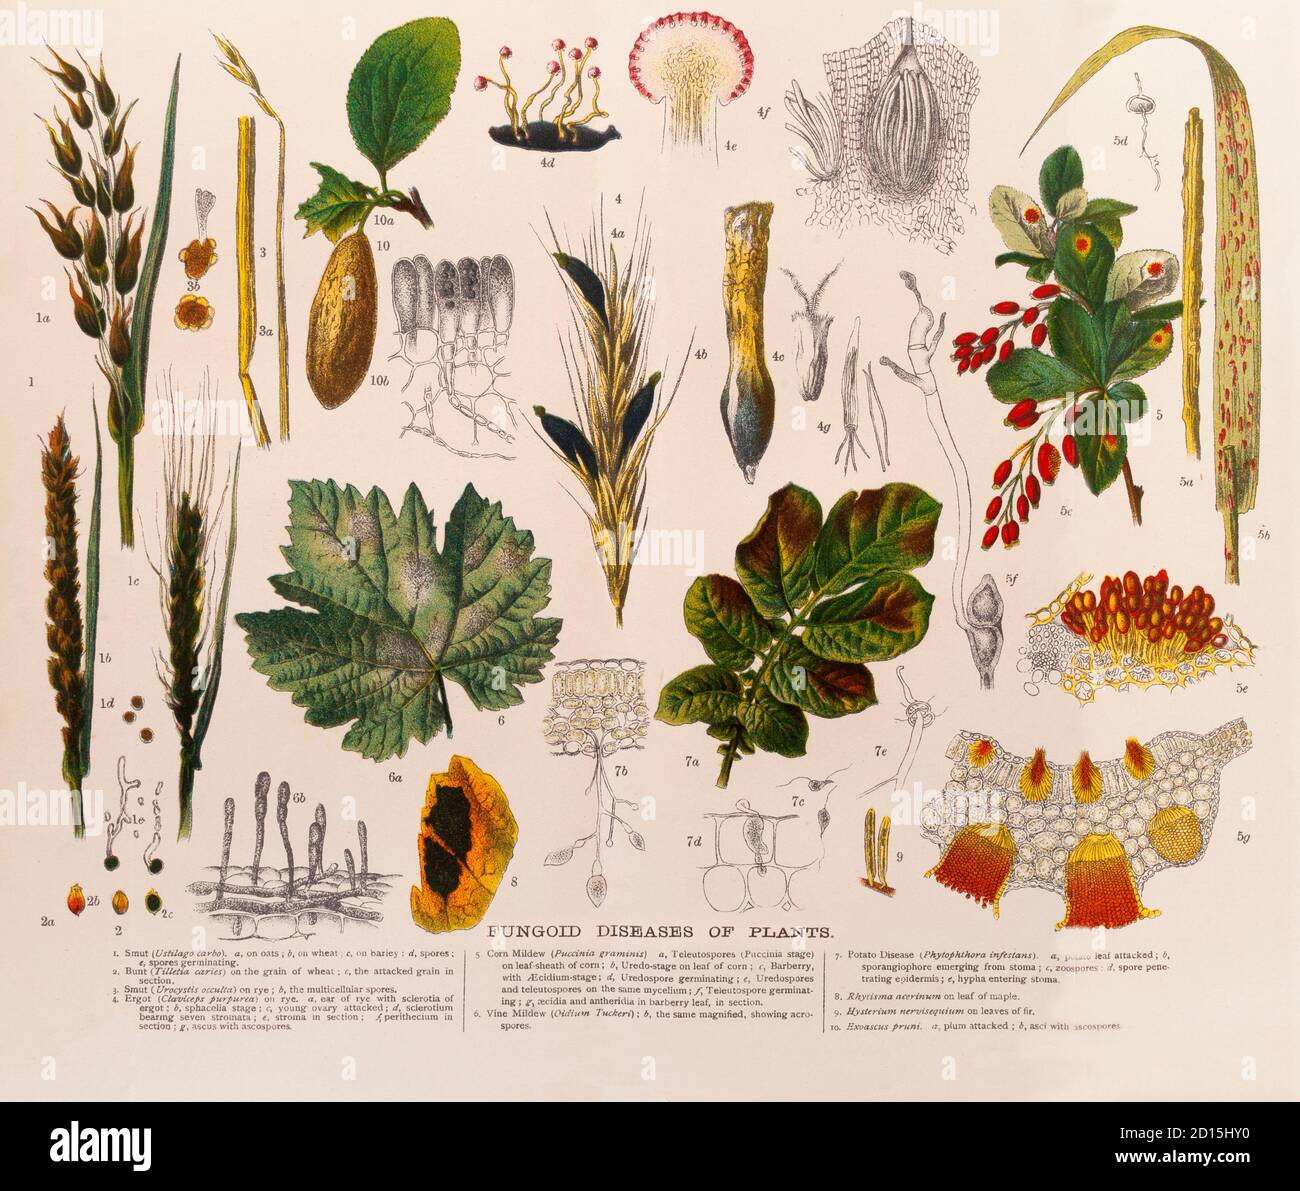 Un graphique de la fin du XIXe siècle illustrant divers types de maladies des funkoidés des plantes, collectivement, les champignons et les organismes semblables aux champignons (flos) causent plus de maladies des plantes que tout autre groupe de ravageurs des plantes avec plus de 8,000 espèces démontrées pour causer la maladie. Les champignons et les flos sont des organismes eucaryotes qui n'ont pas de chlorophylle et n'ont donc pas la capacité de photosynthétiser leur propre nourriture. Ils obtiennent des éléments nutritifs par absorption à travers de minuscules filaments de type fil appelés hyphes qui se branle dans toutes les directions dans un substrat. Une collection d'hyphes est appelée mycélium (pl., mycélium) et mycélium est la clé Banque D'Images